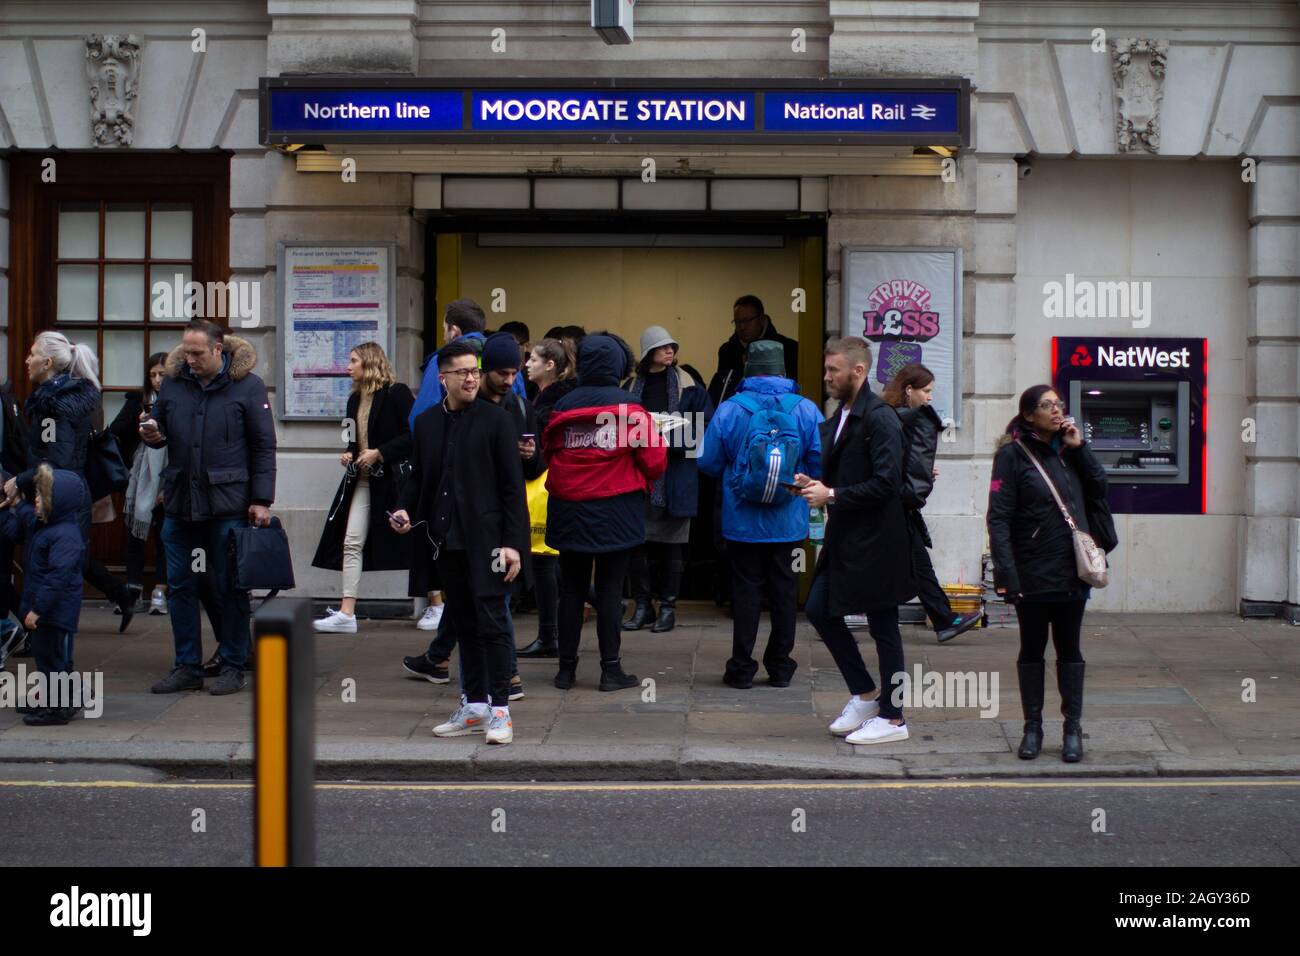 Moorgate station pendant l'heure de pointe du matin avec Time-out time out magazine grossiste Banque D'Images